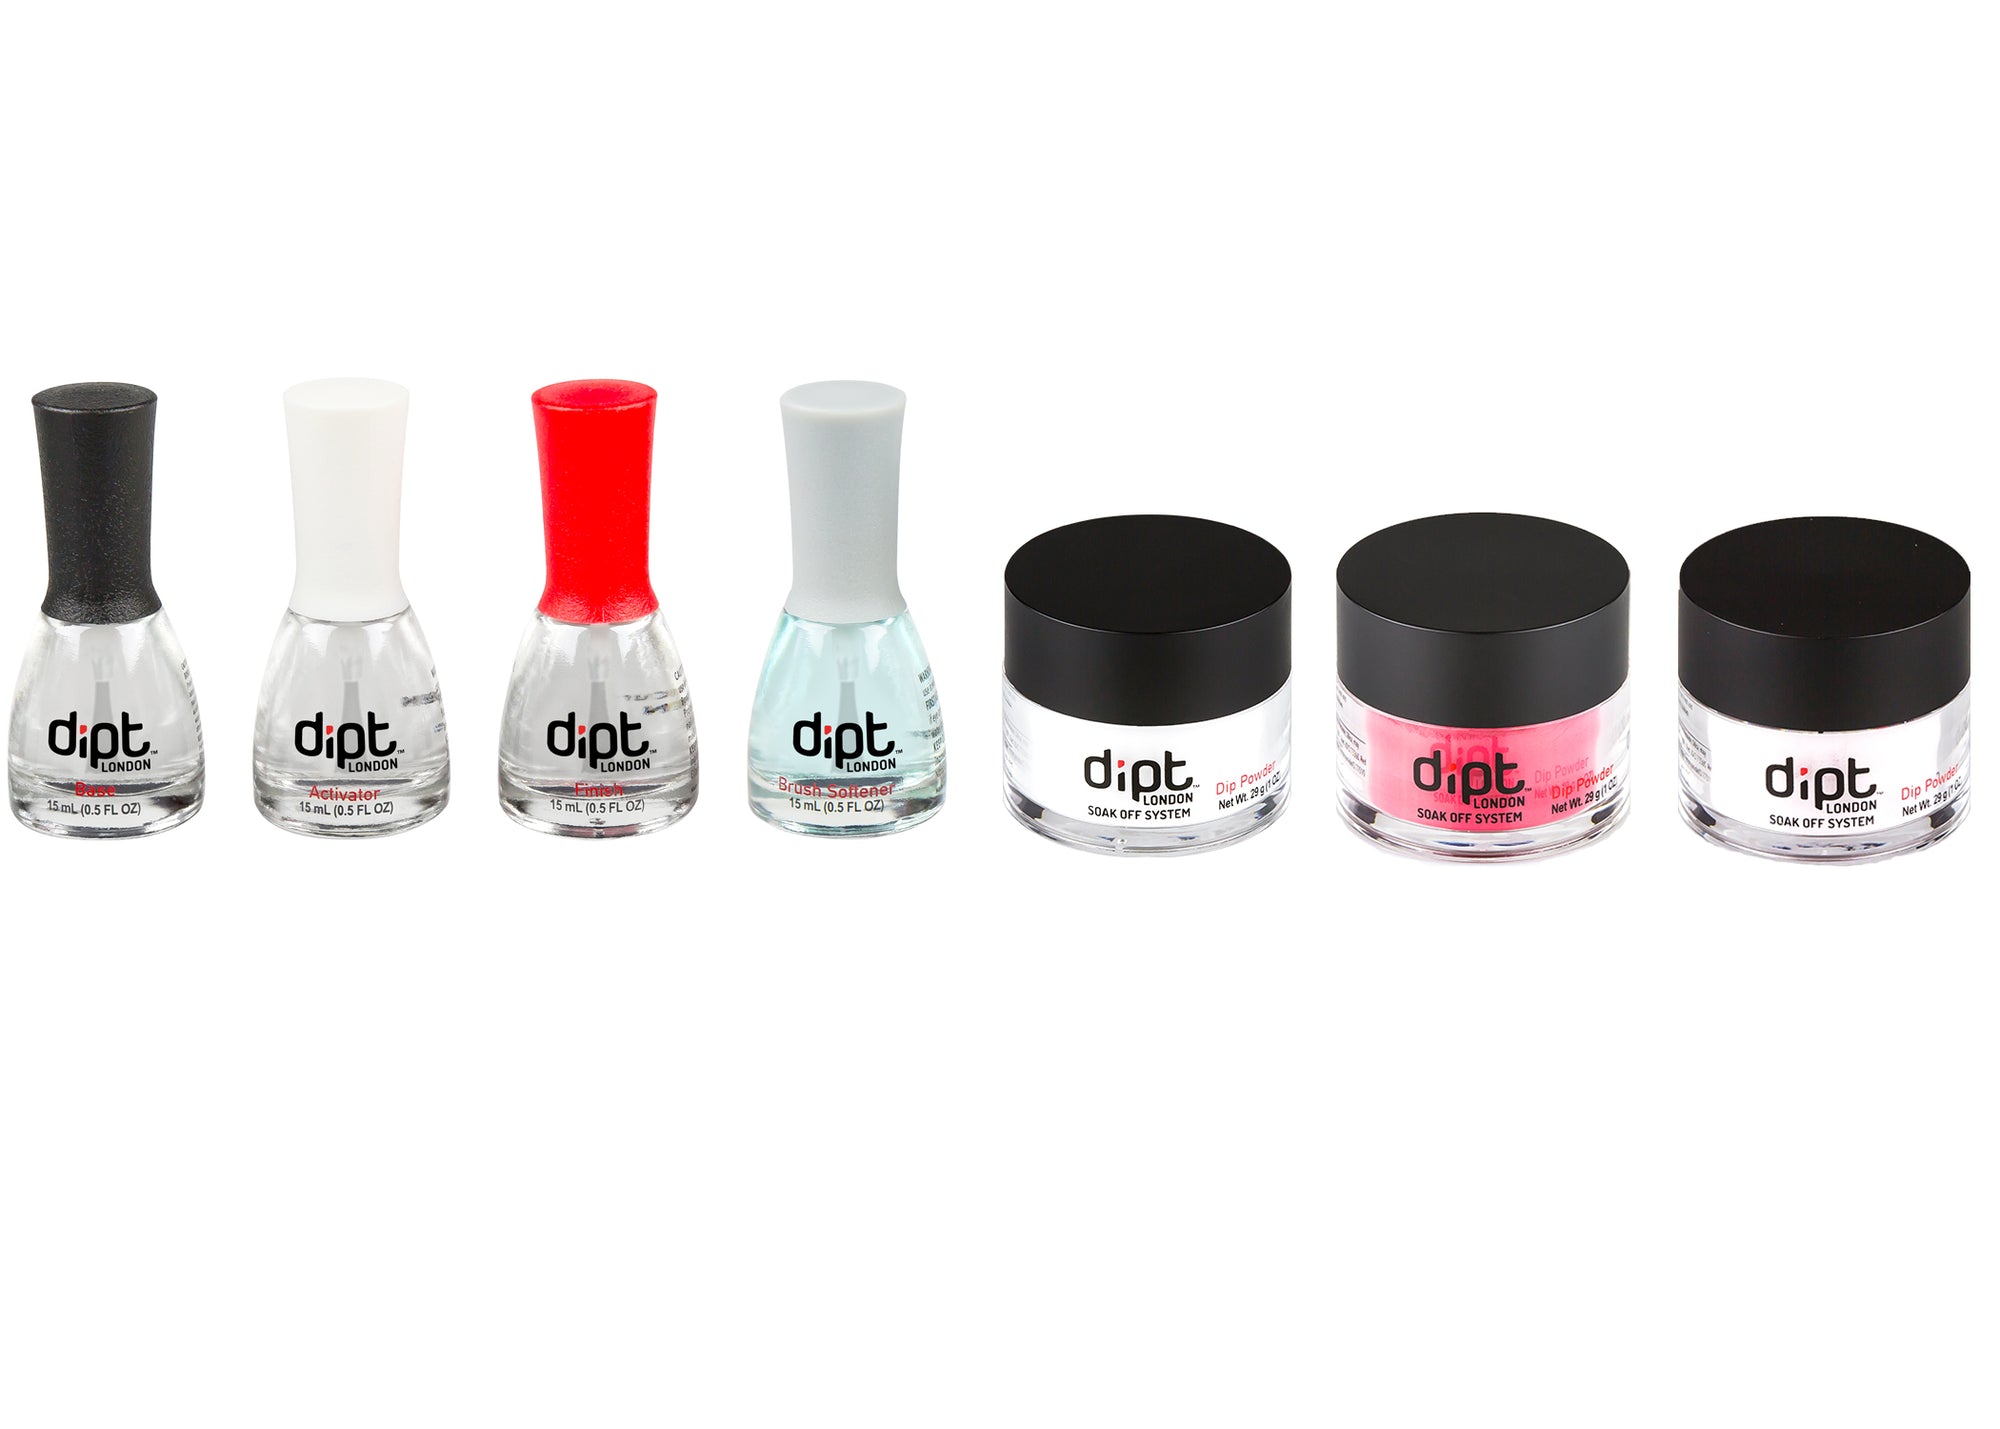 dipt acrylic nail powder starter kit, dip starter kit with liquids, dip powder kit